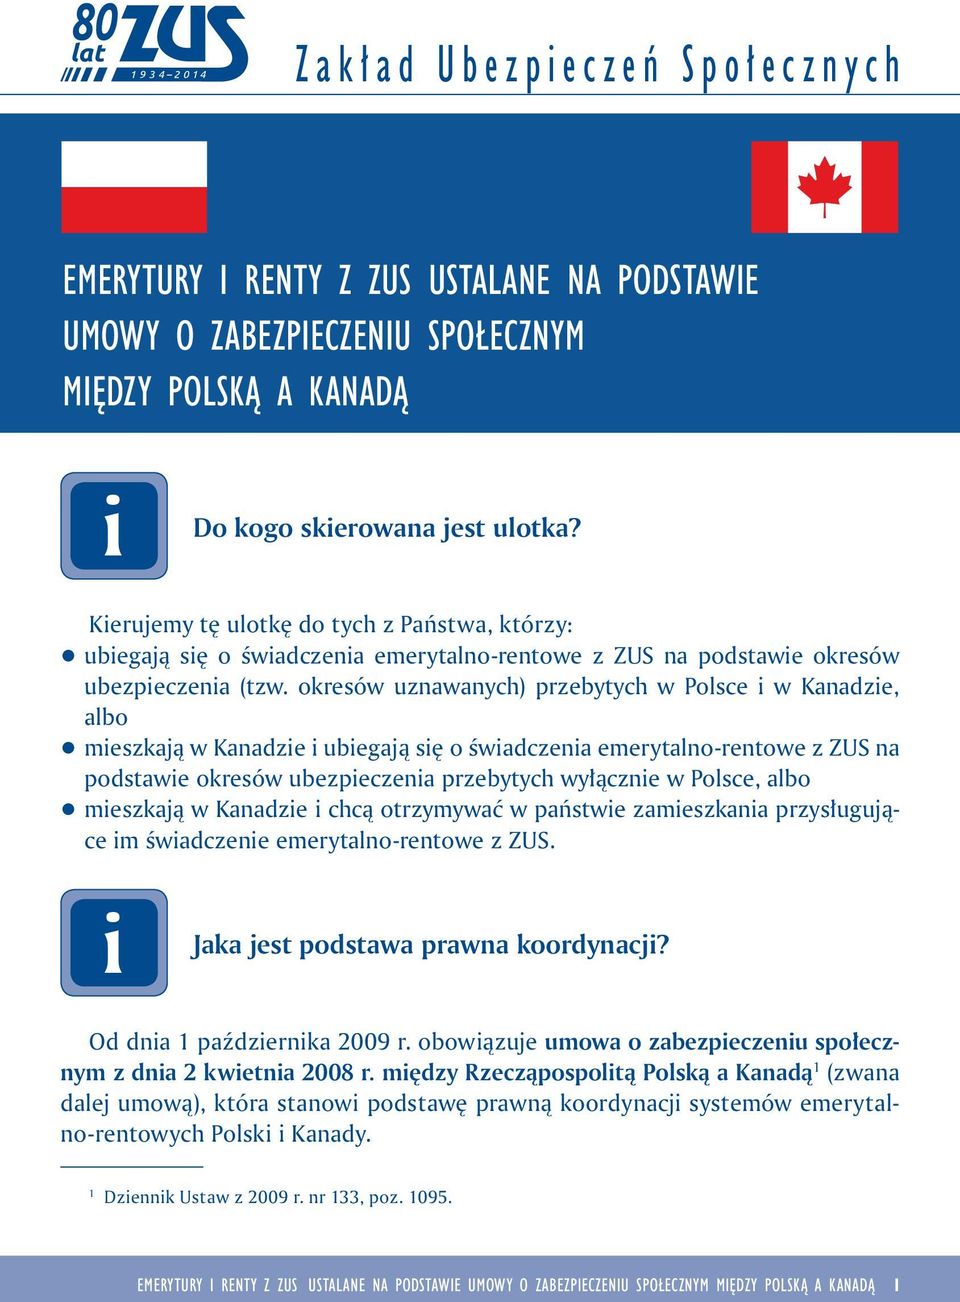 okresów uznawanych) przebytych w Polsce w Kanadze, albo q meszkają w Kanadze ubegają sę o śwadczena emerytalno-rentowe z ZUS na podstawe okresów ubezpeczena przebytych wyłączne w Polsce, albo q